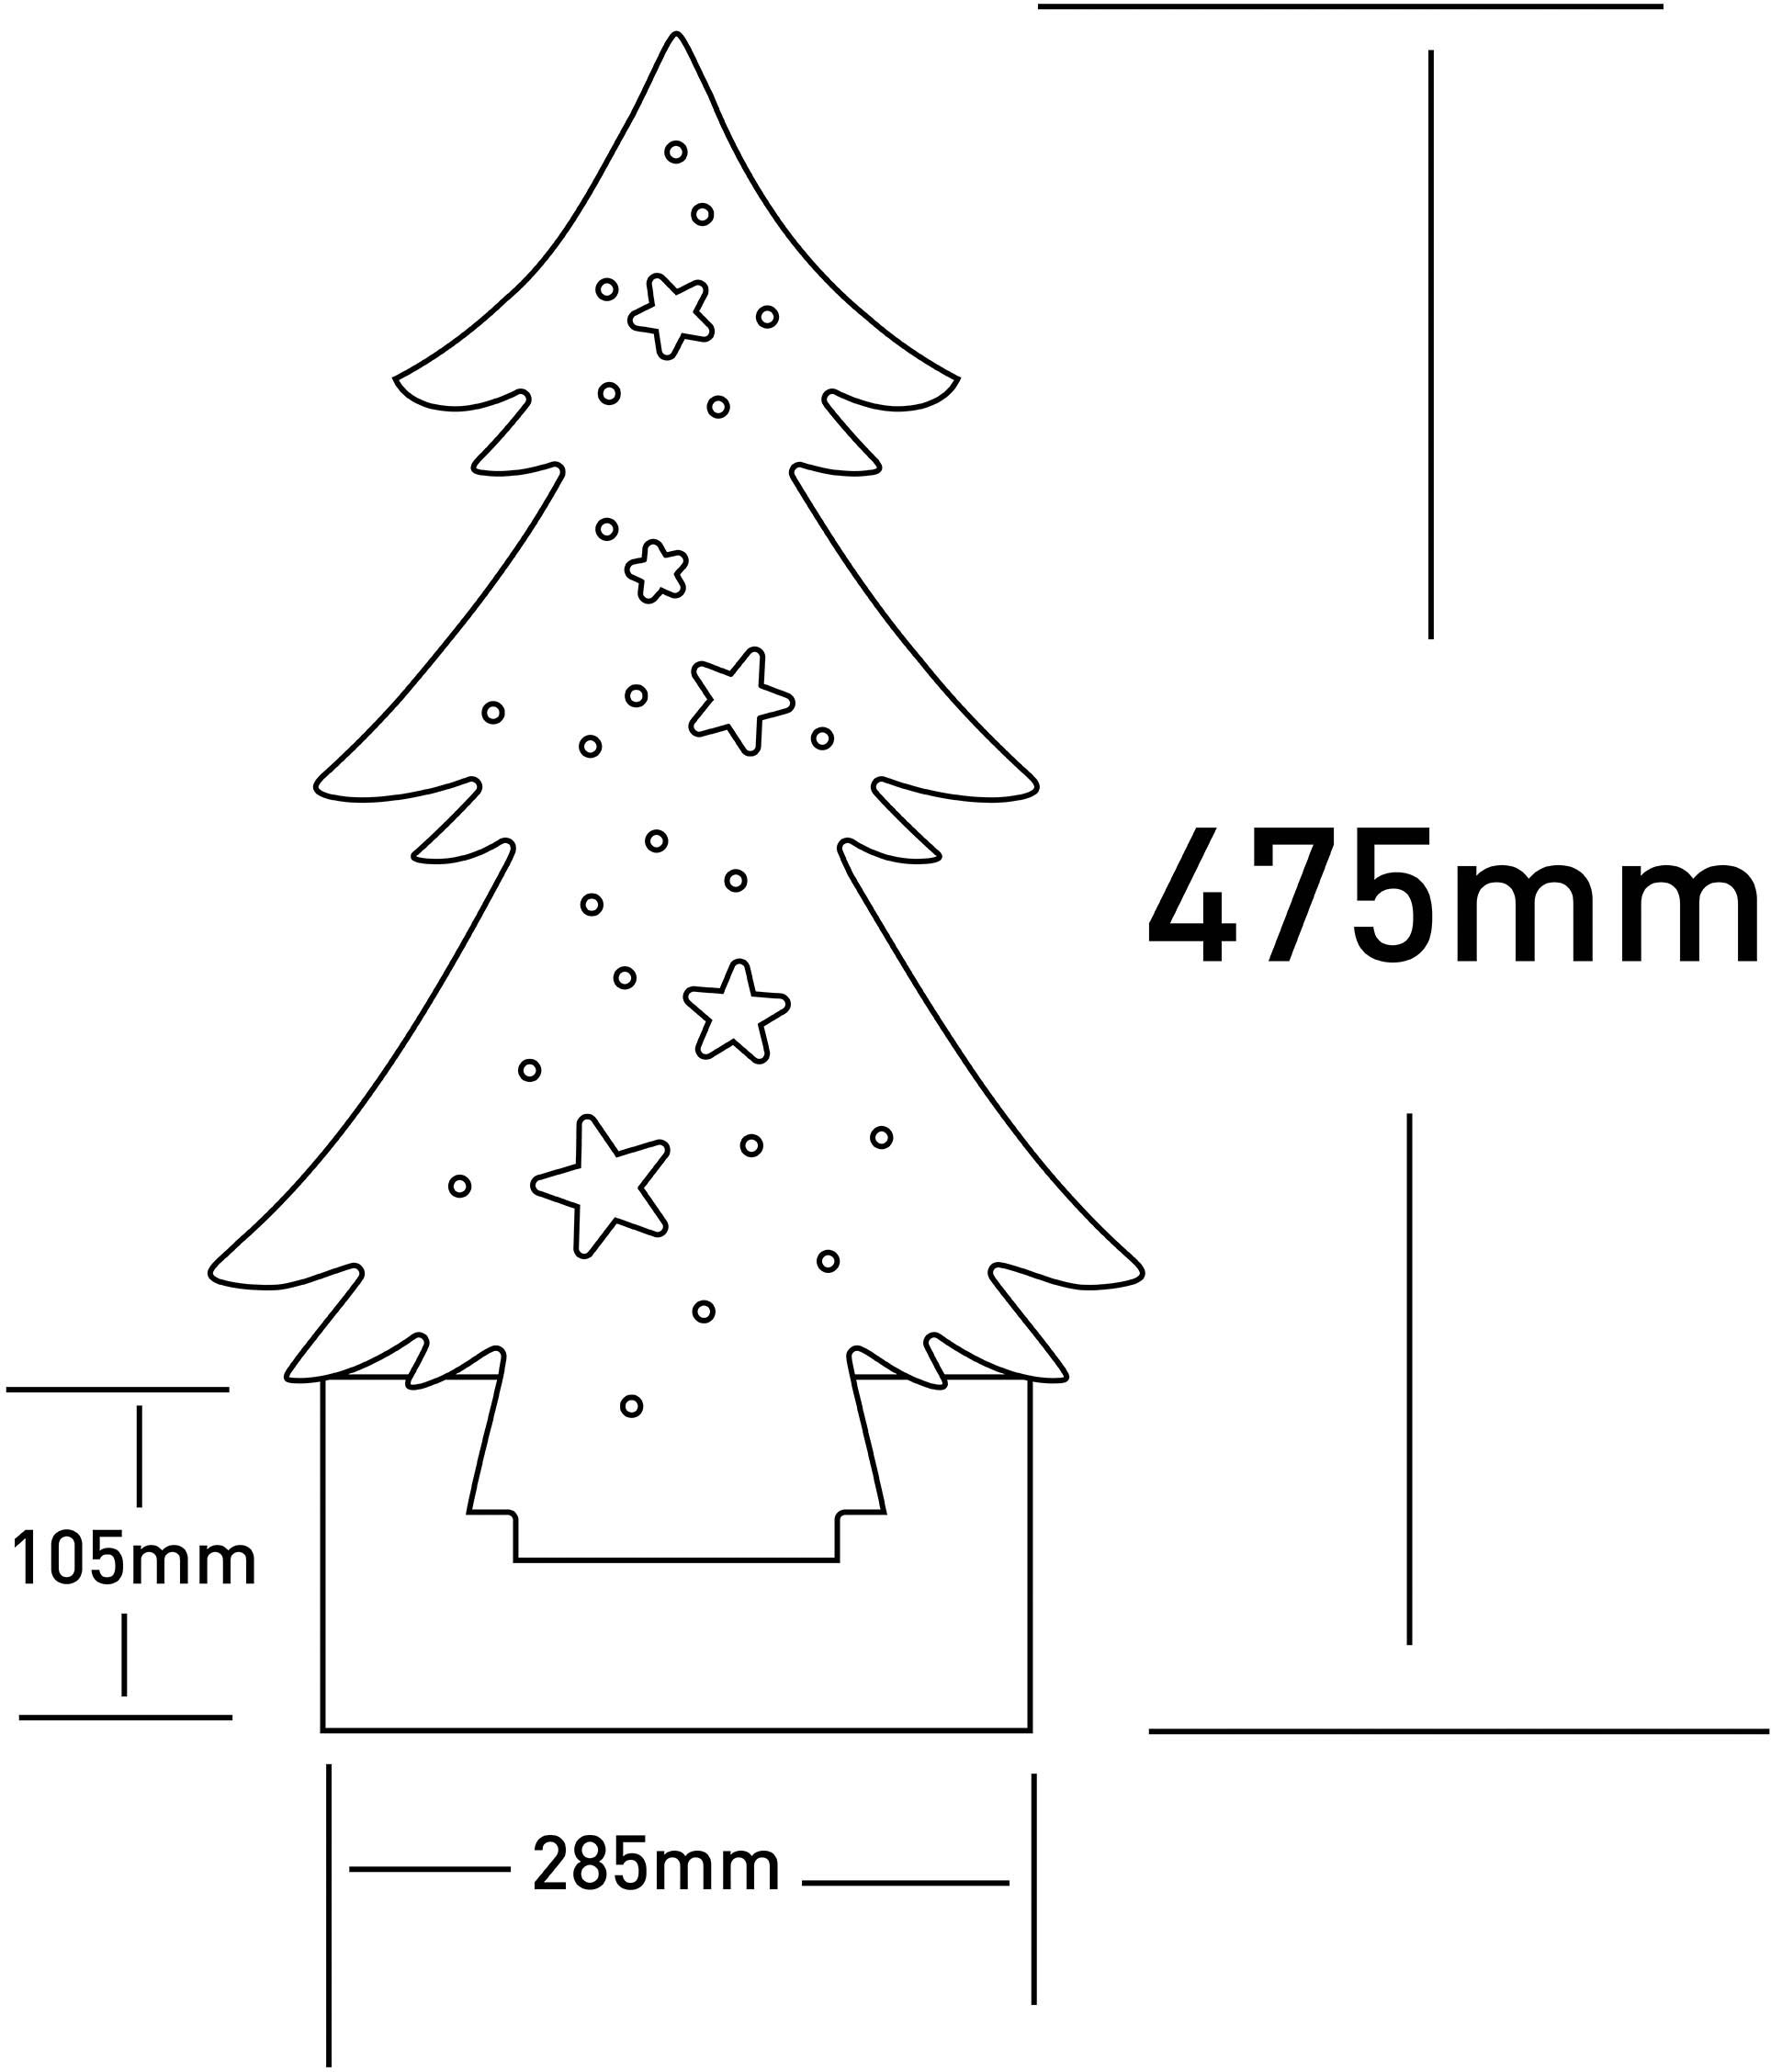 näve LED Baum »Tannenbaum, Weihnachtsdeko aus Holz«, Holz-Stehleuchte, Höhe ca. 47,5 cm, Batteriebetrieben